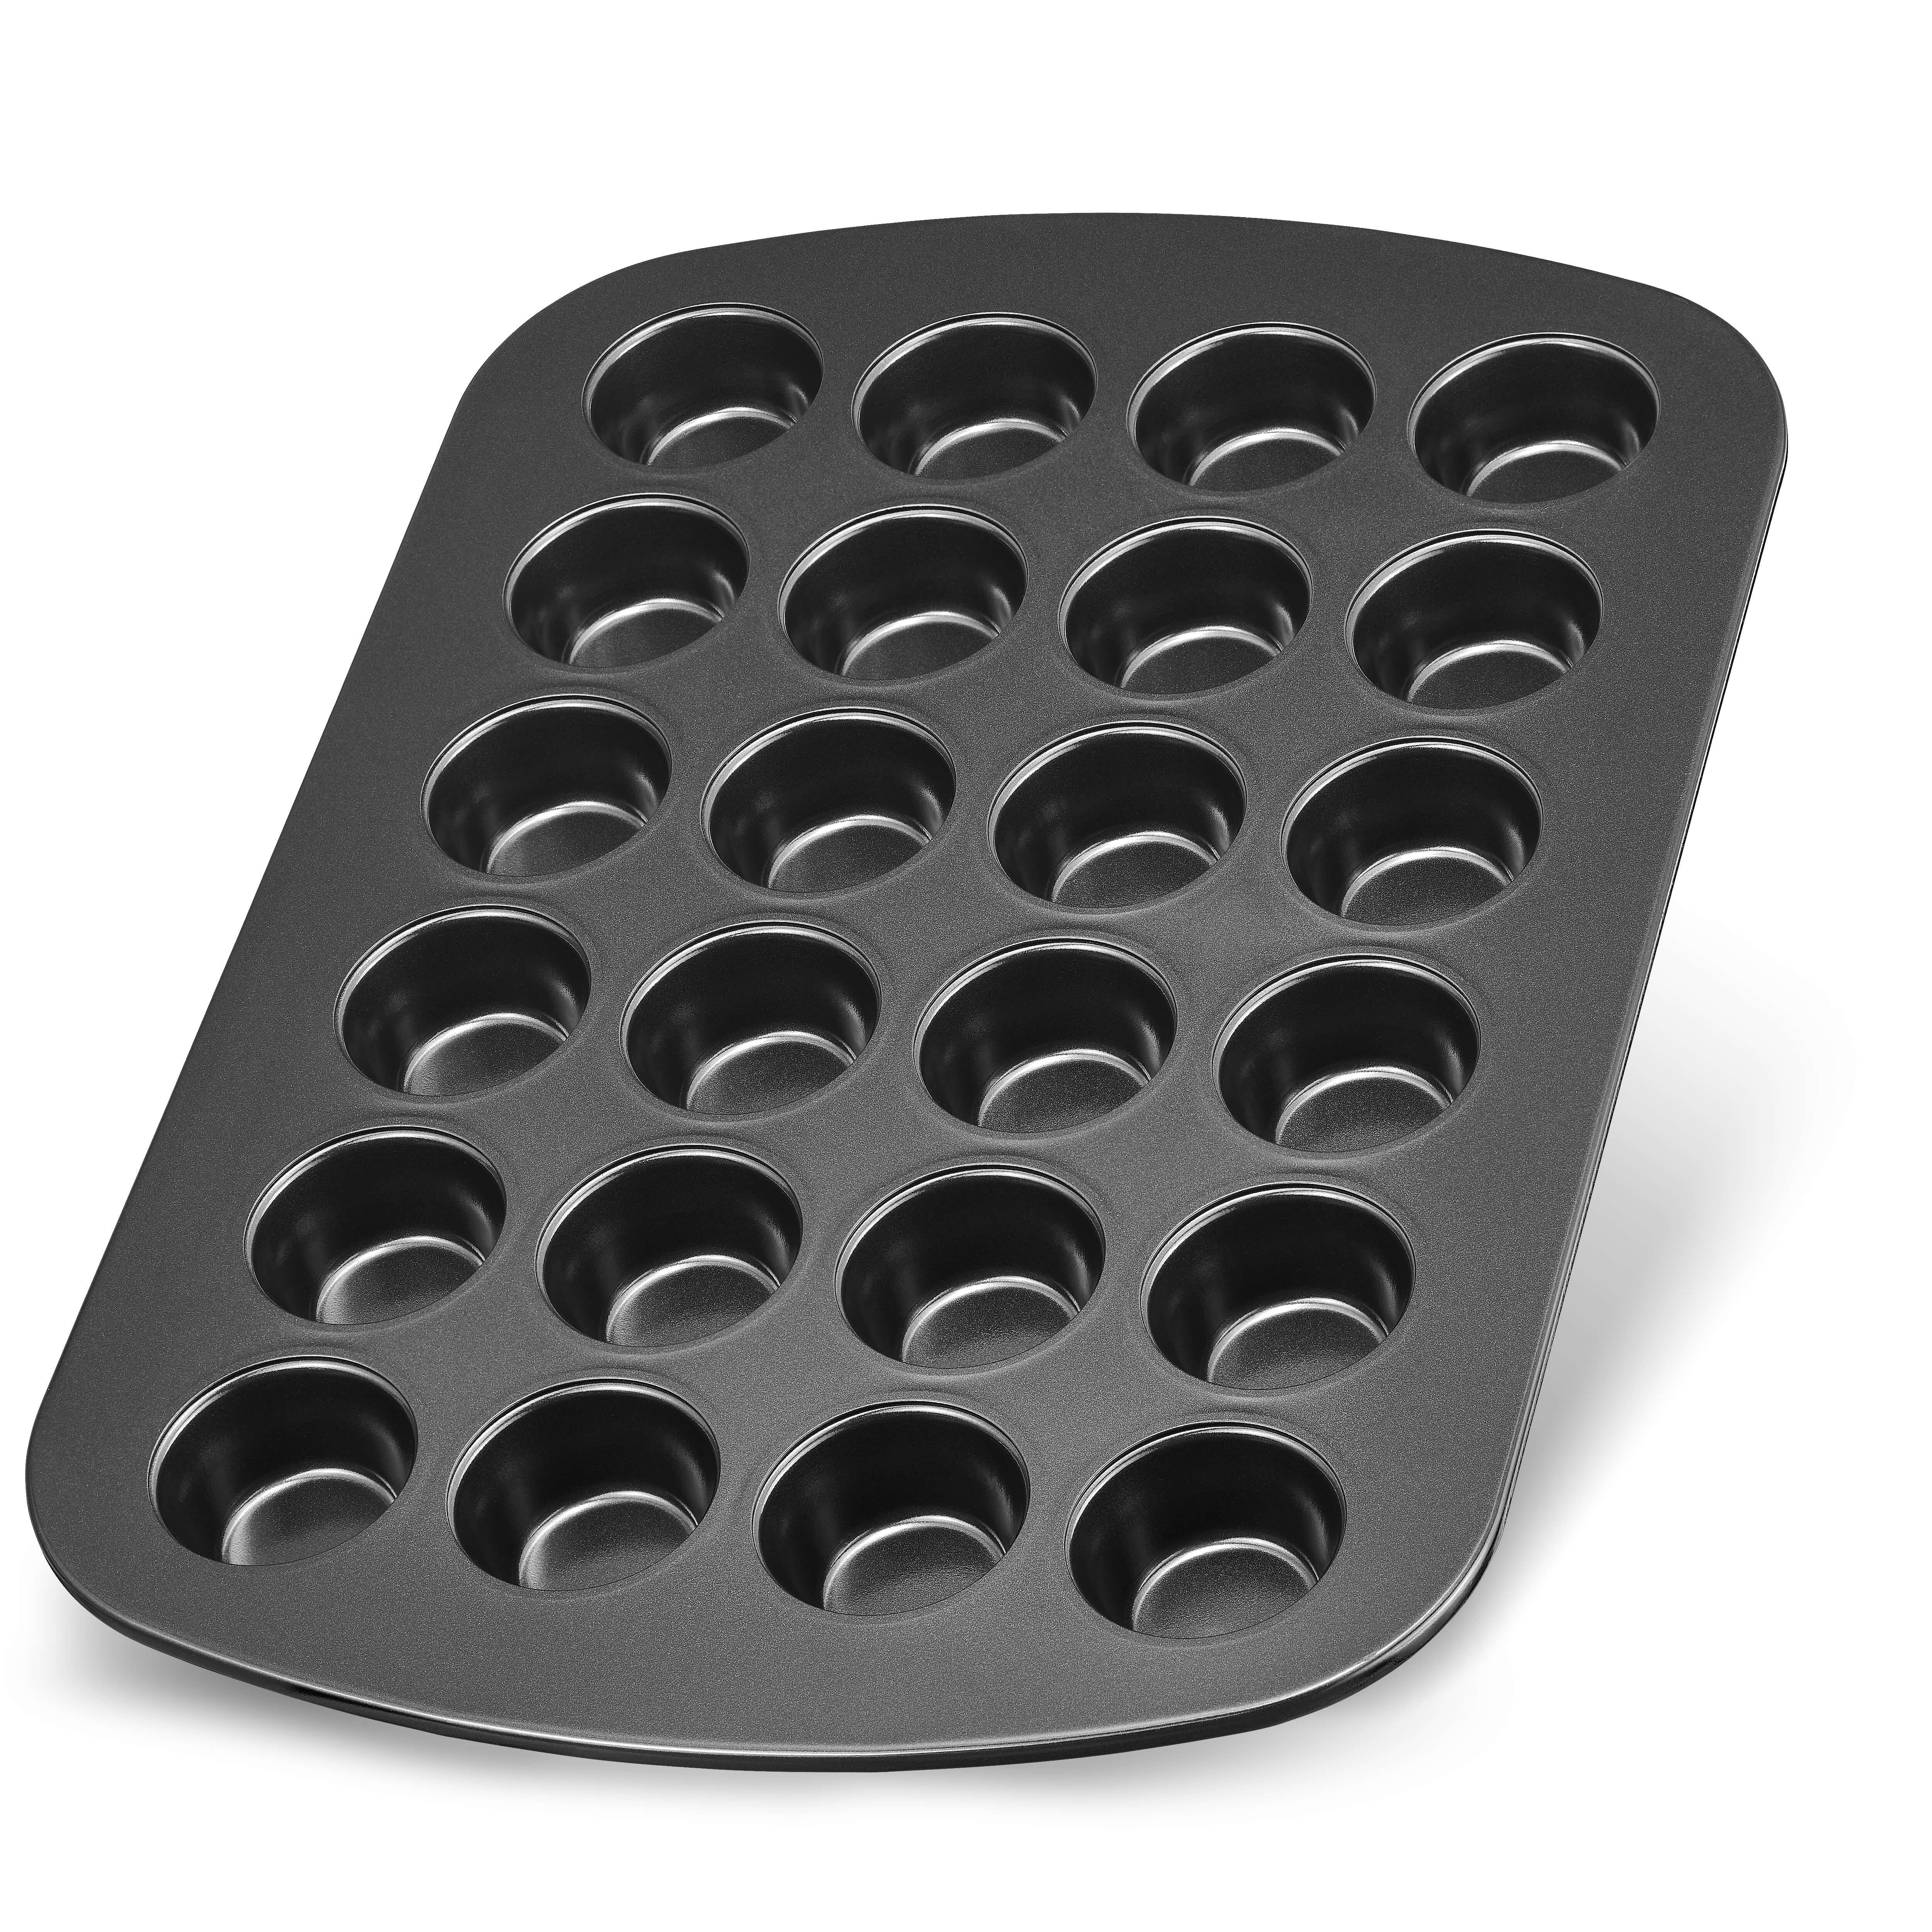 LINFELDT Muffinform hochwertig beschichtete Backform für 24 Mini - Muffins | Muffinformen